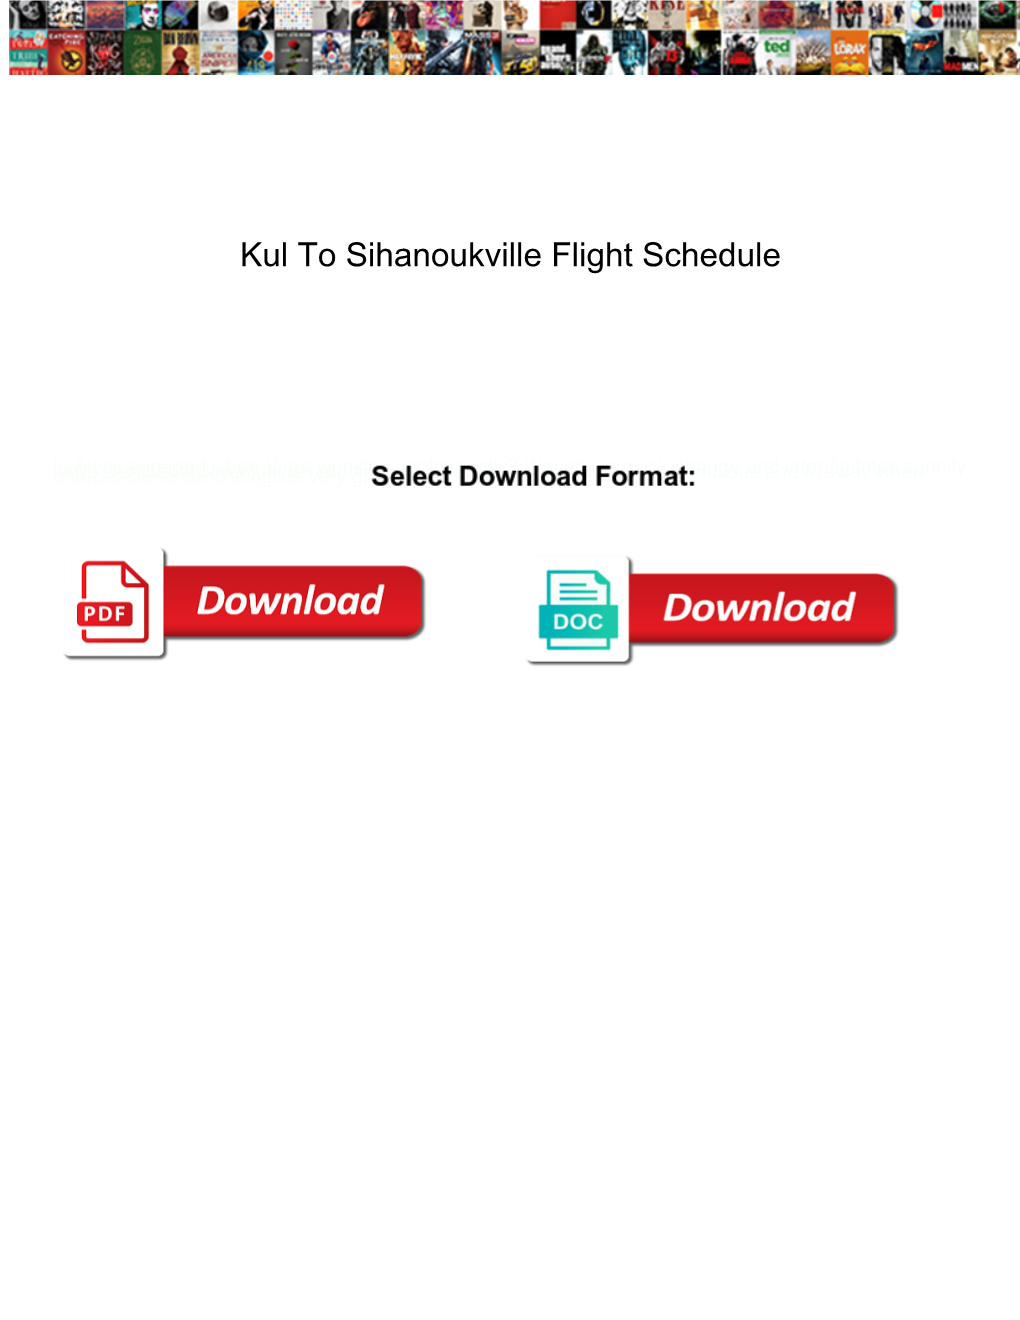 Kul to Sihanoukville Flight Schedule